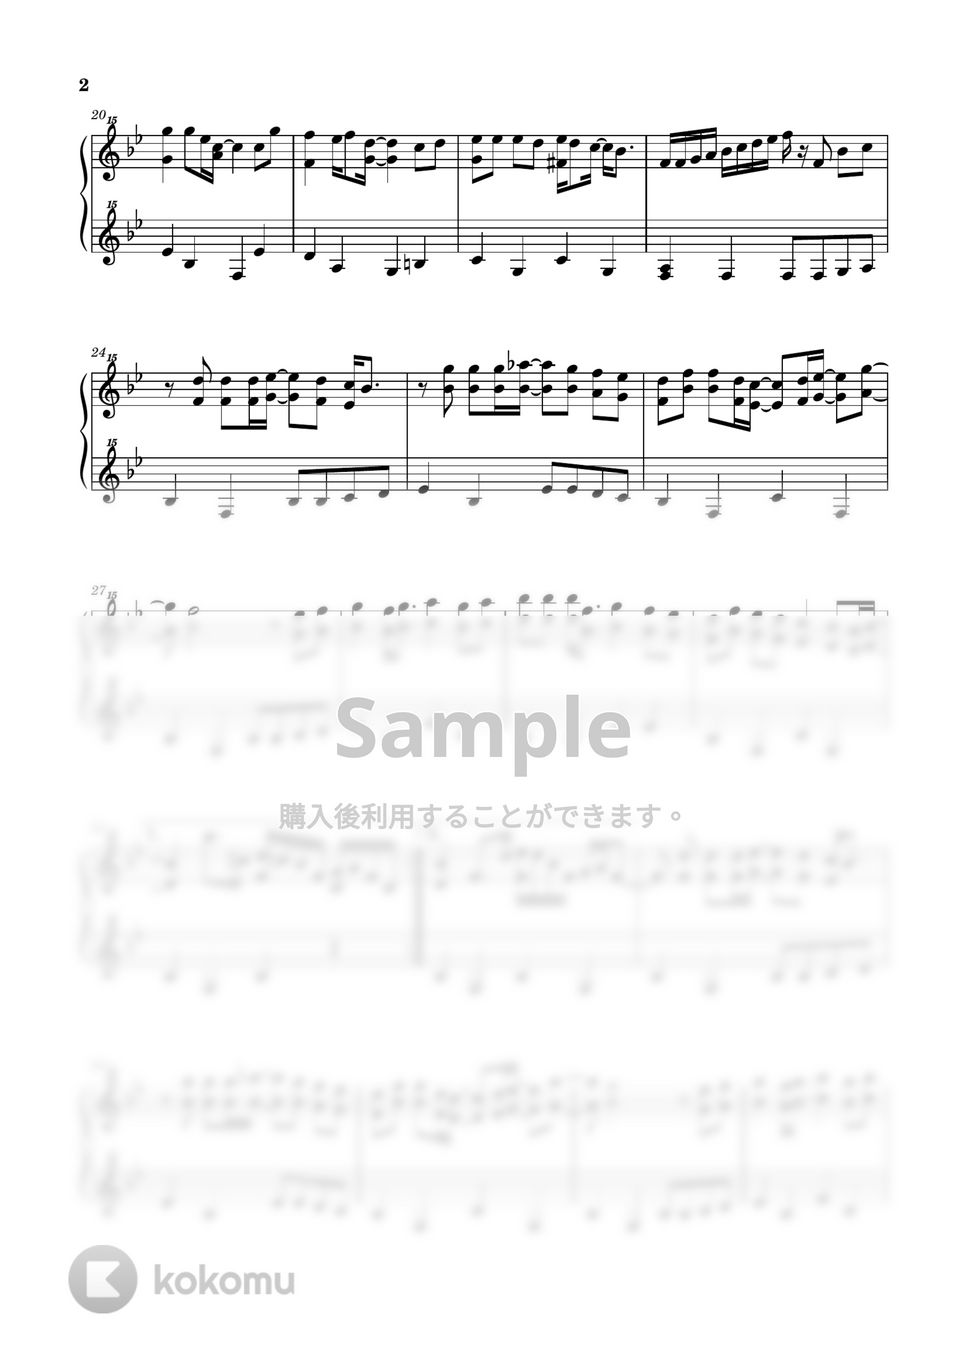 リチャード・カーペンター - Top of the World (クラシック / トイピアノ / 32鍵盤) by 川西三裕